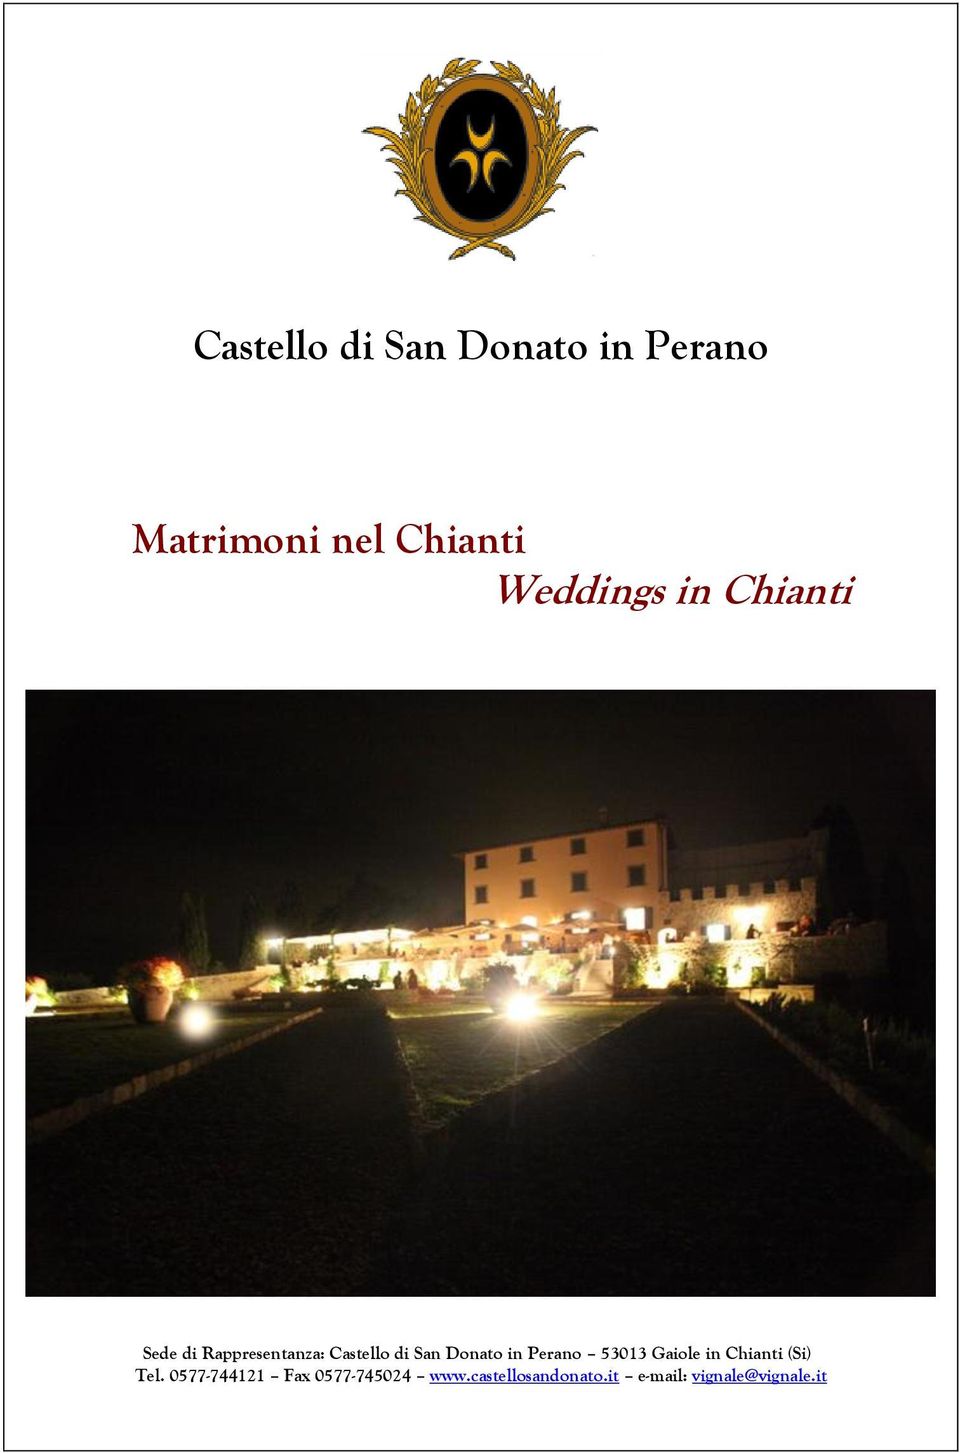 Donato in Perano 53013 Gaiole in Chianti (Si) Tel.